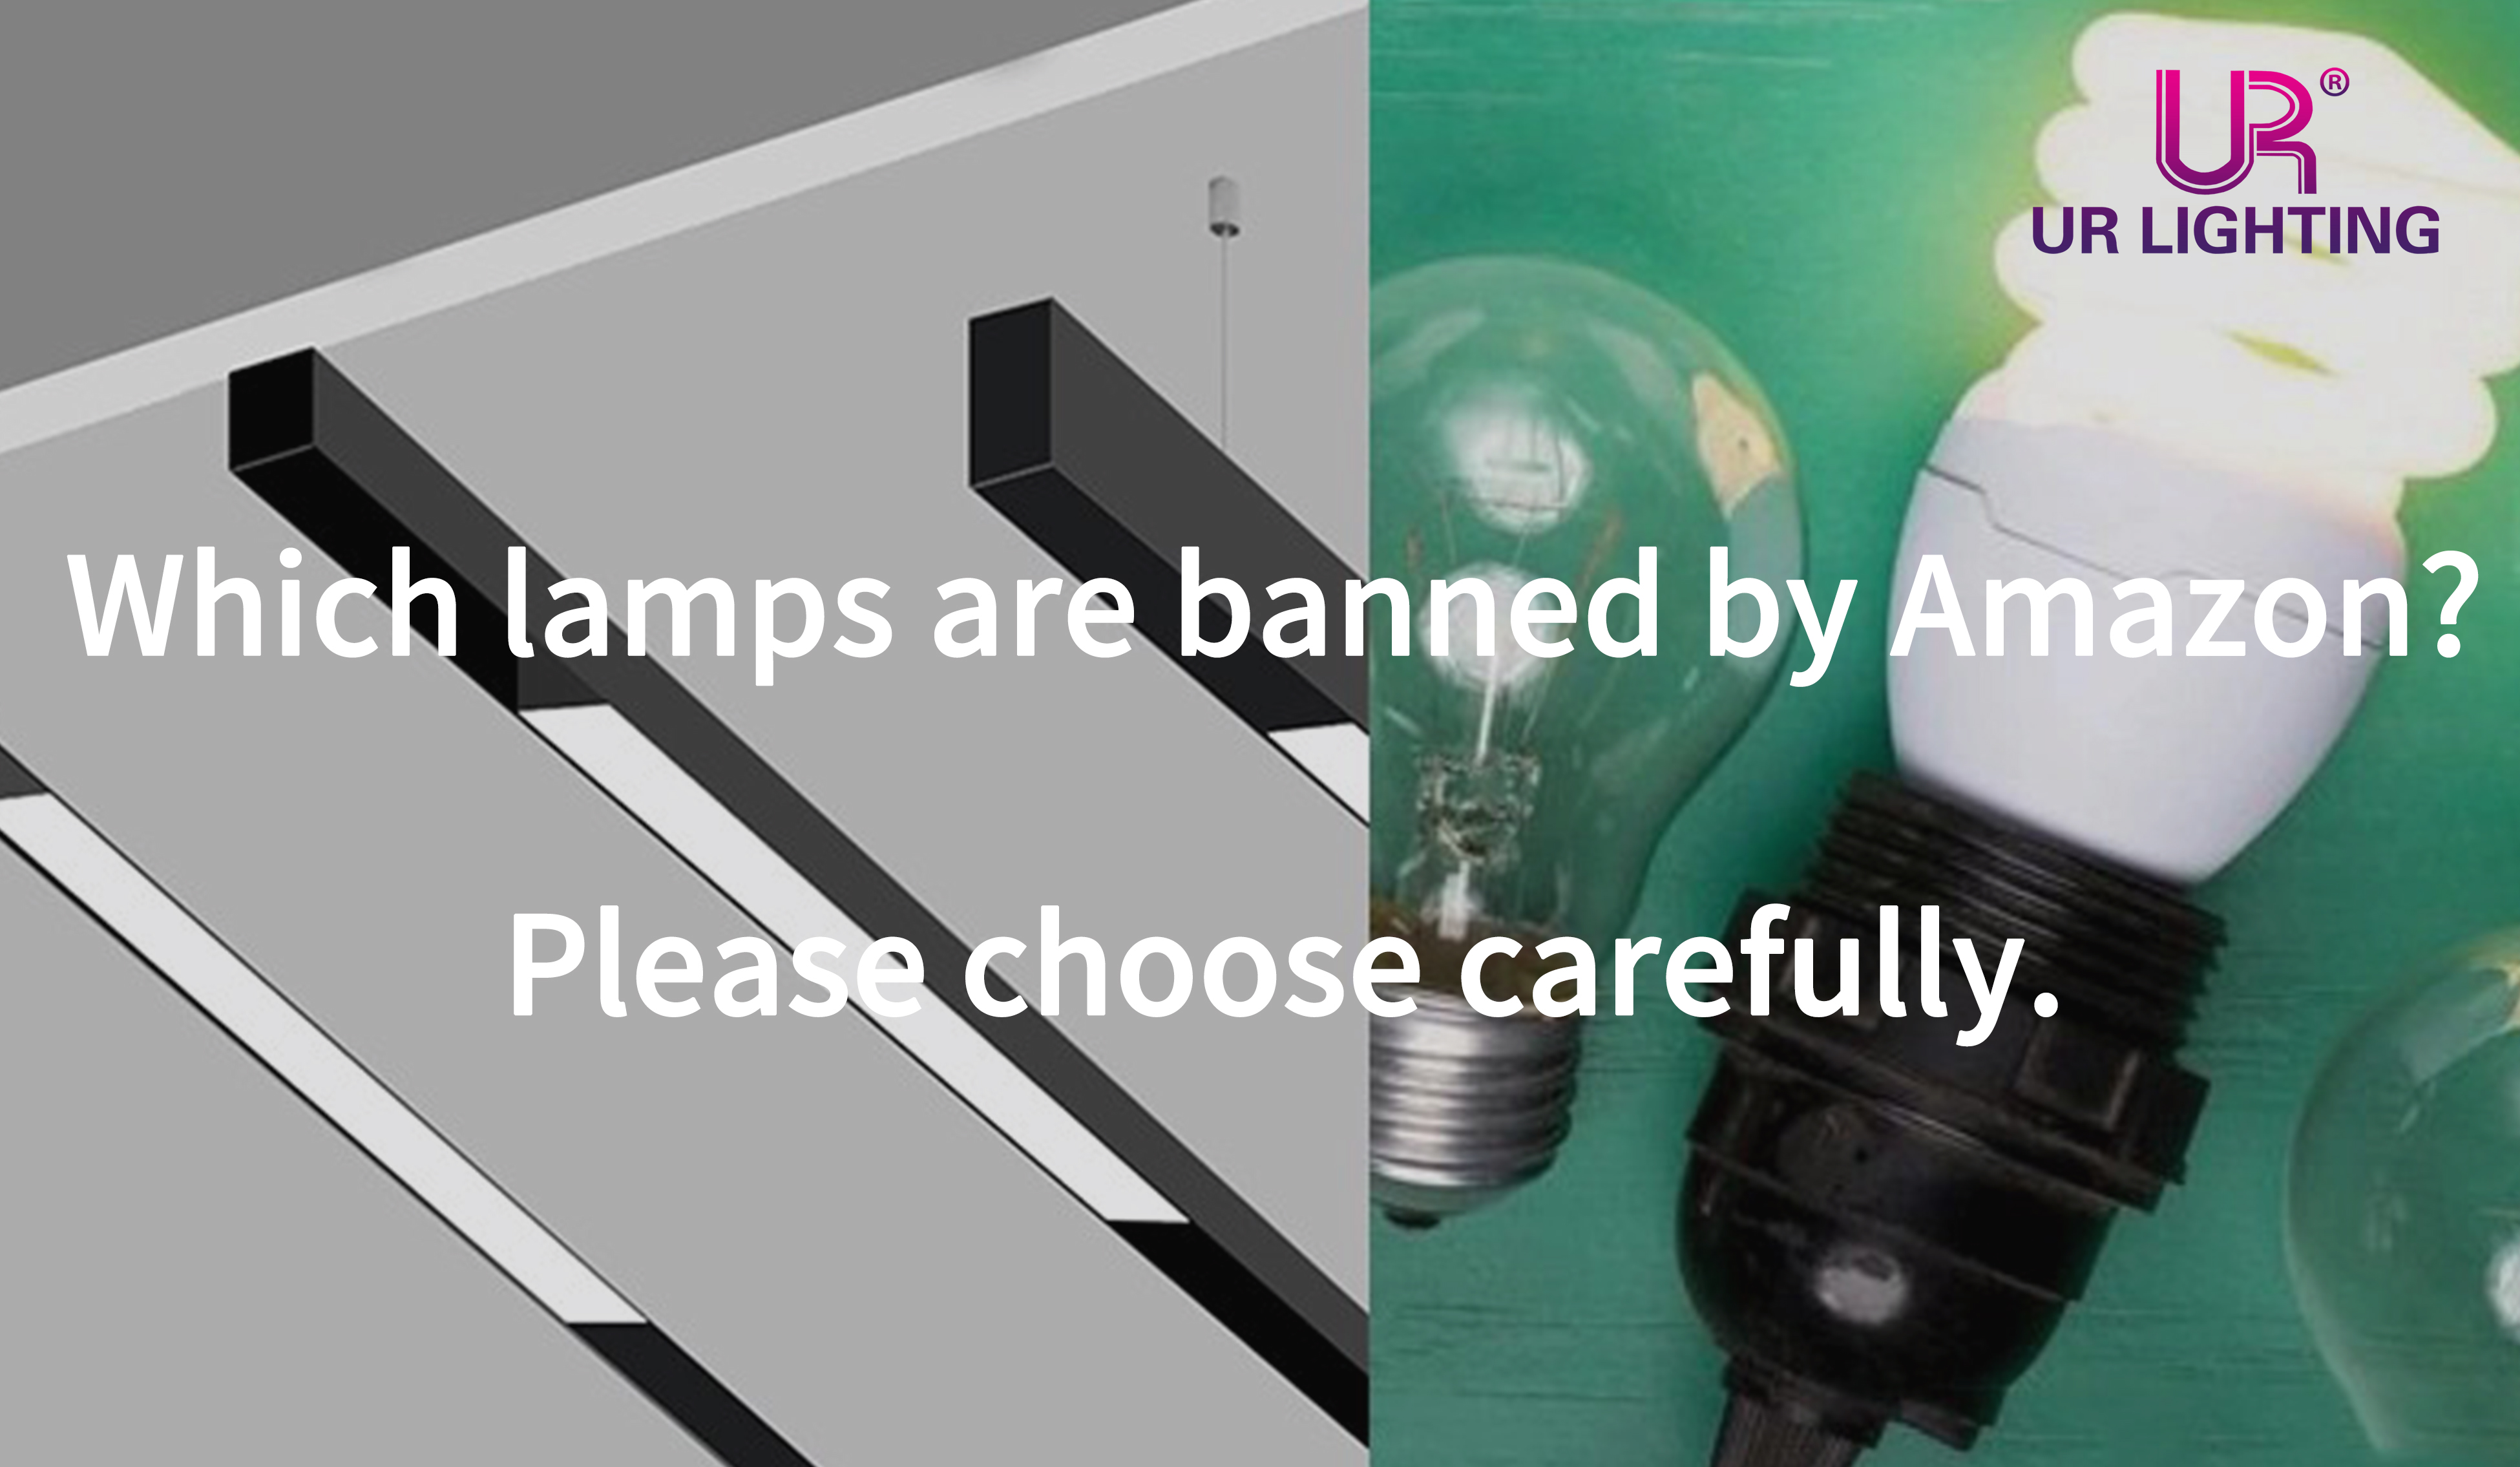 ¿Qué lámparas están prohibidas por Amazon? Por favor, elija con cuidado.